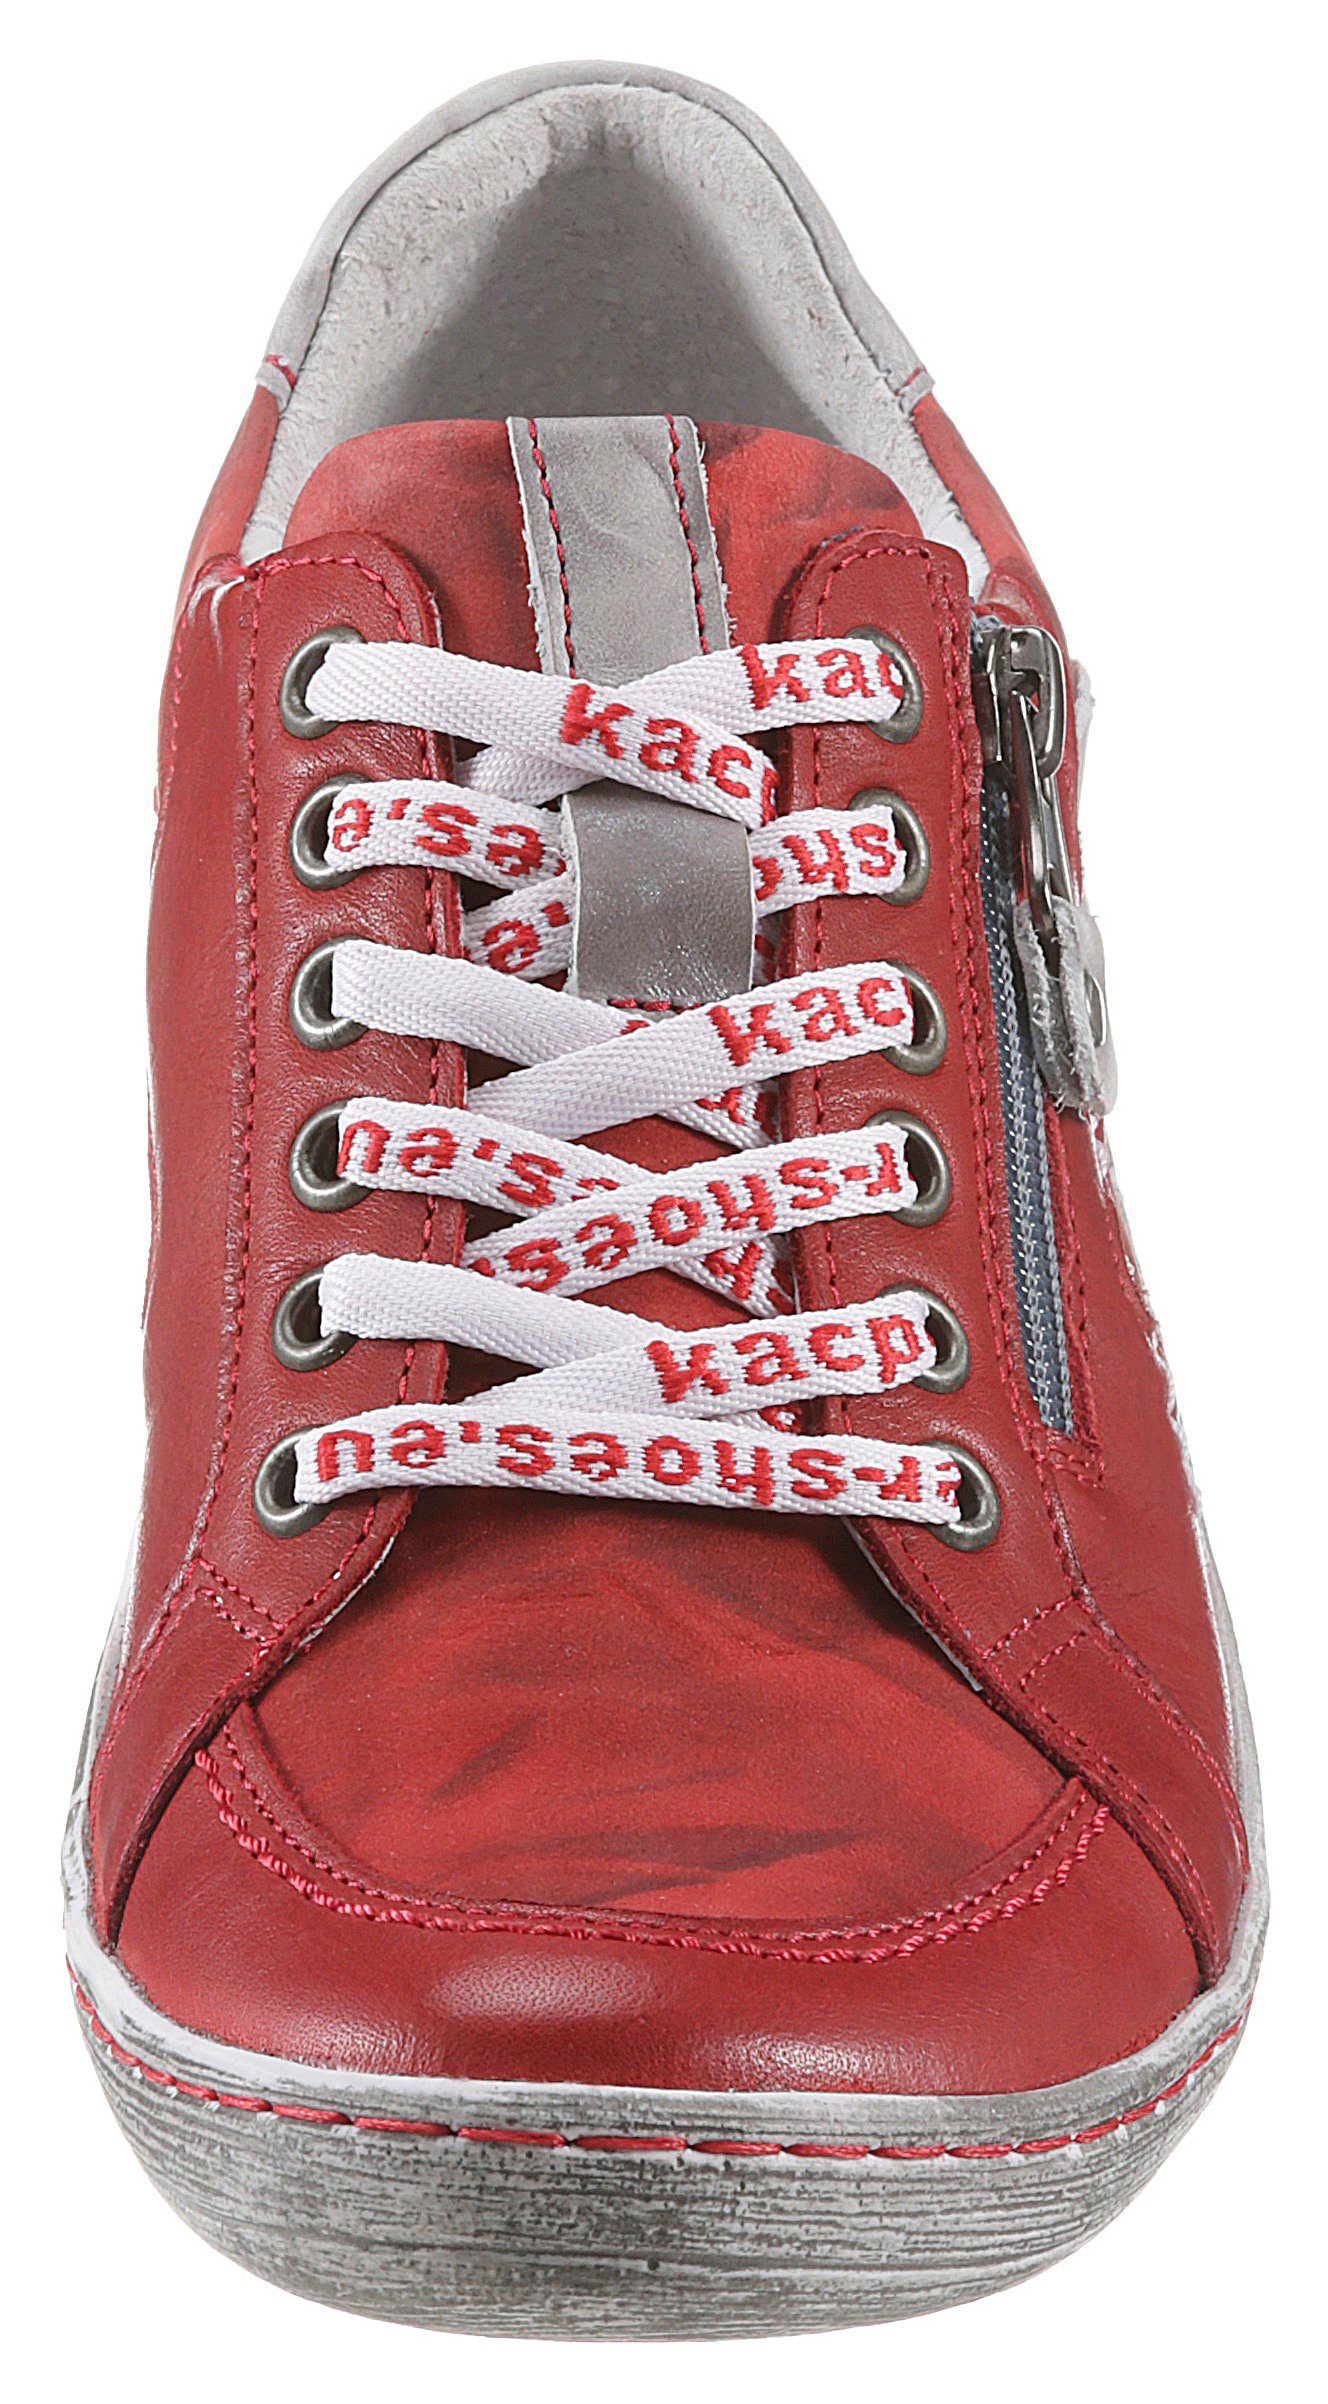 Schuhe Halbschuhe KACPER Schnürschuh mit praktischem Außenreißverschluss